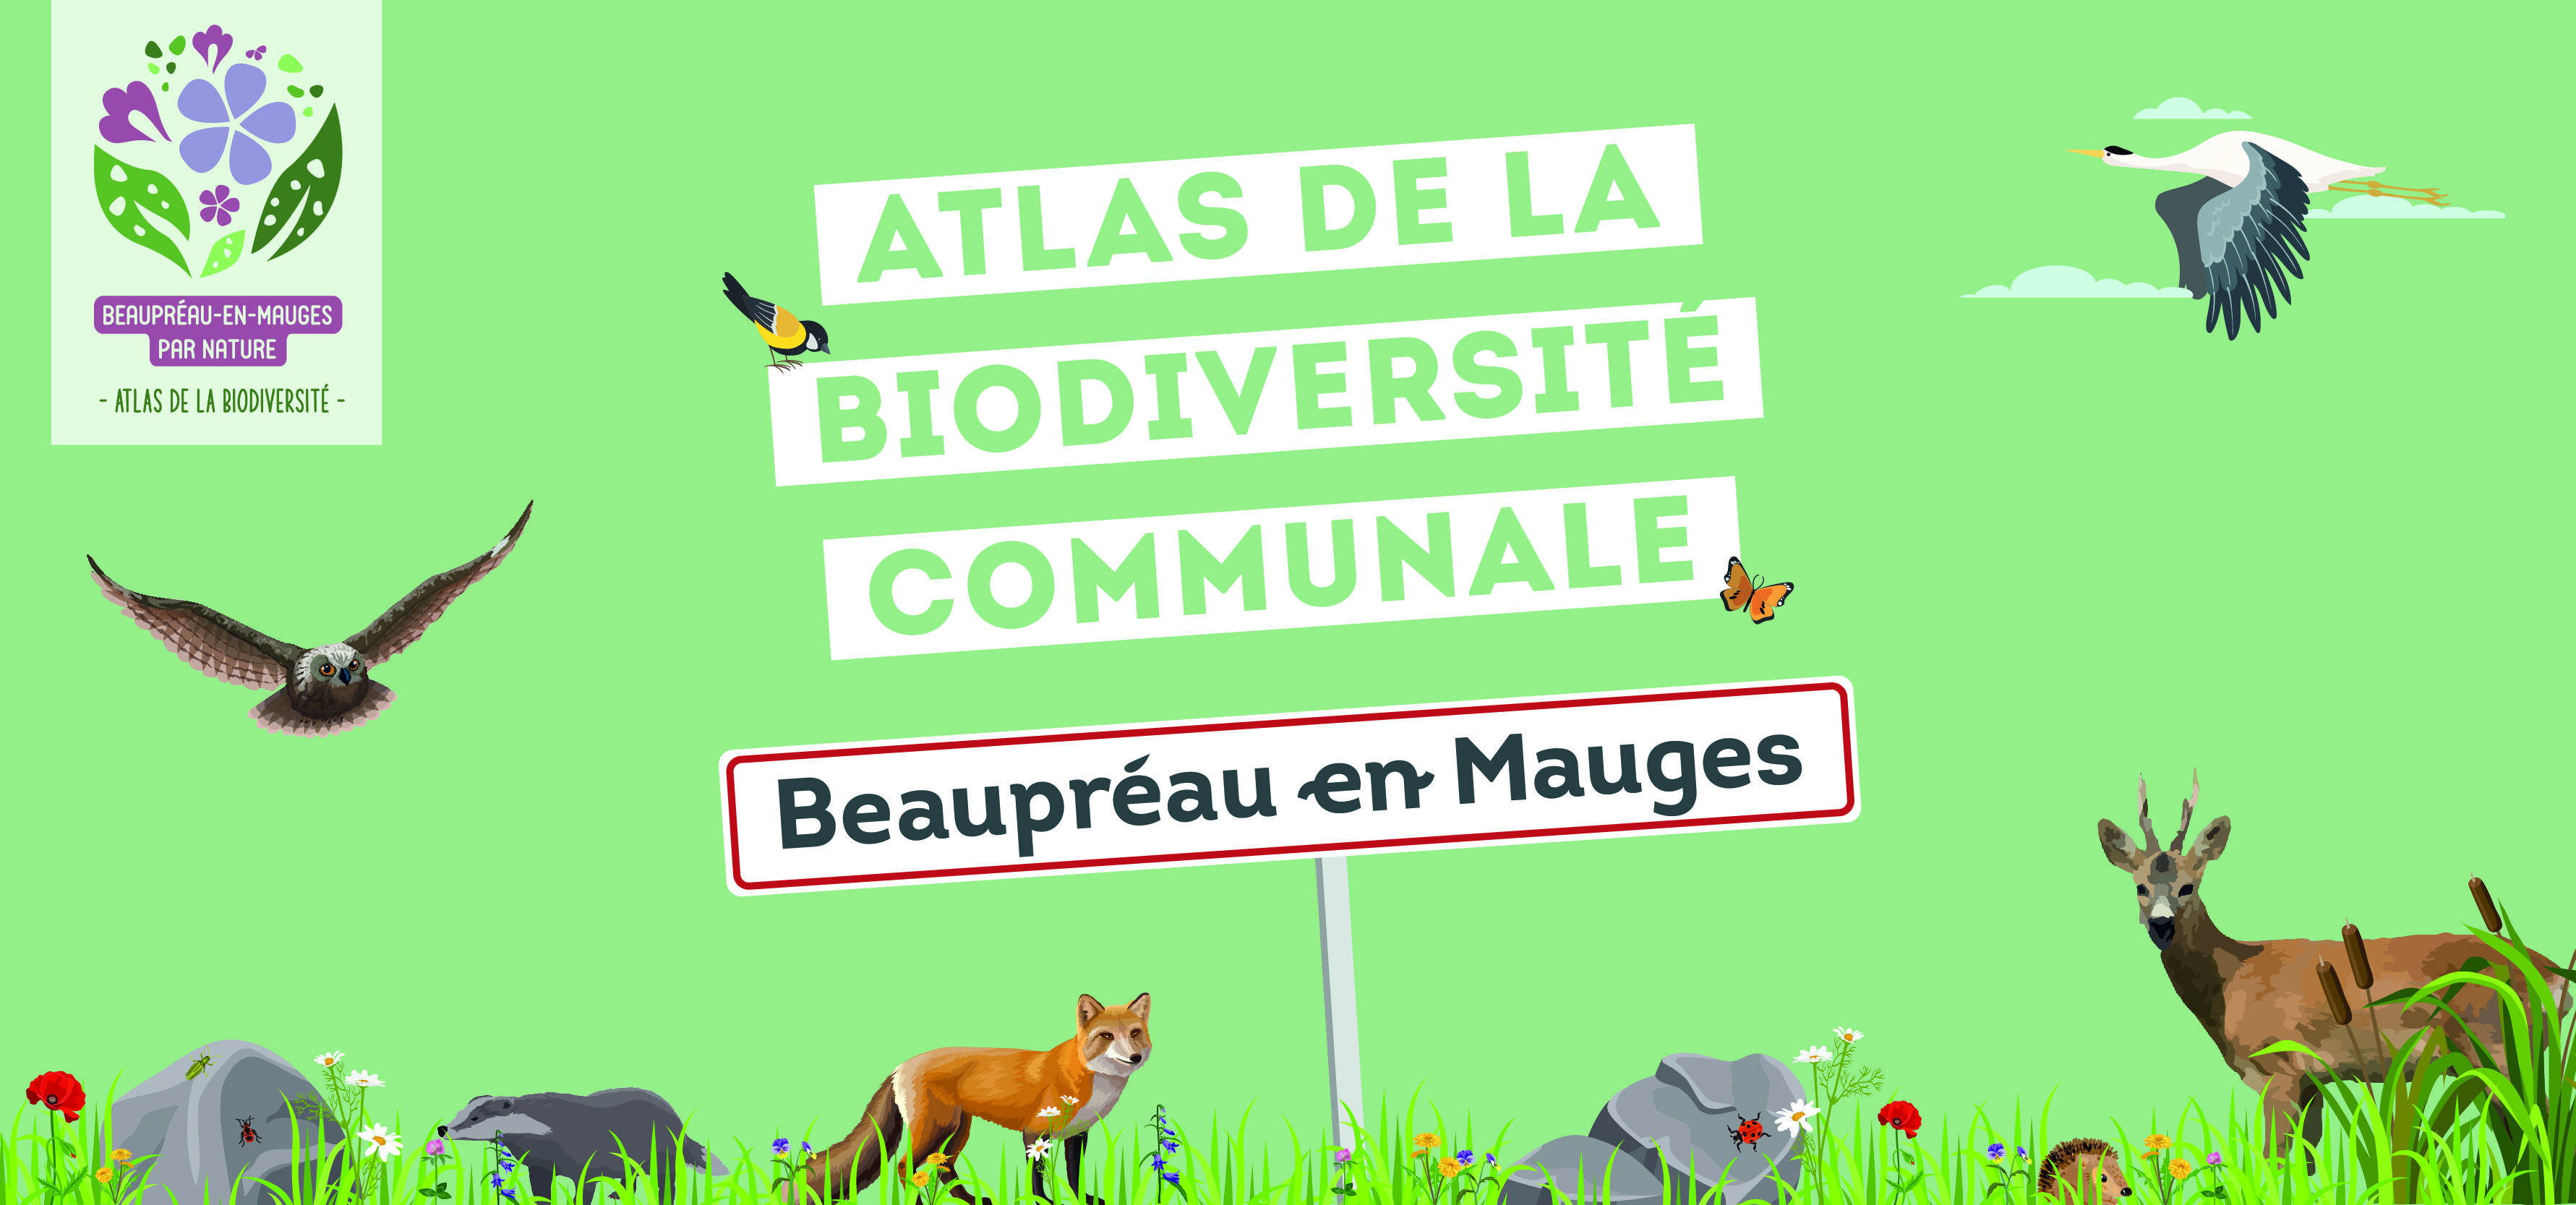 Atlas de la biodiversité, c'est parti pour vos contributions !